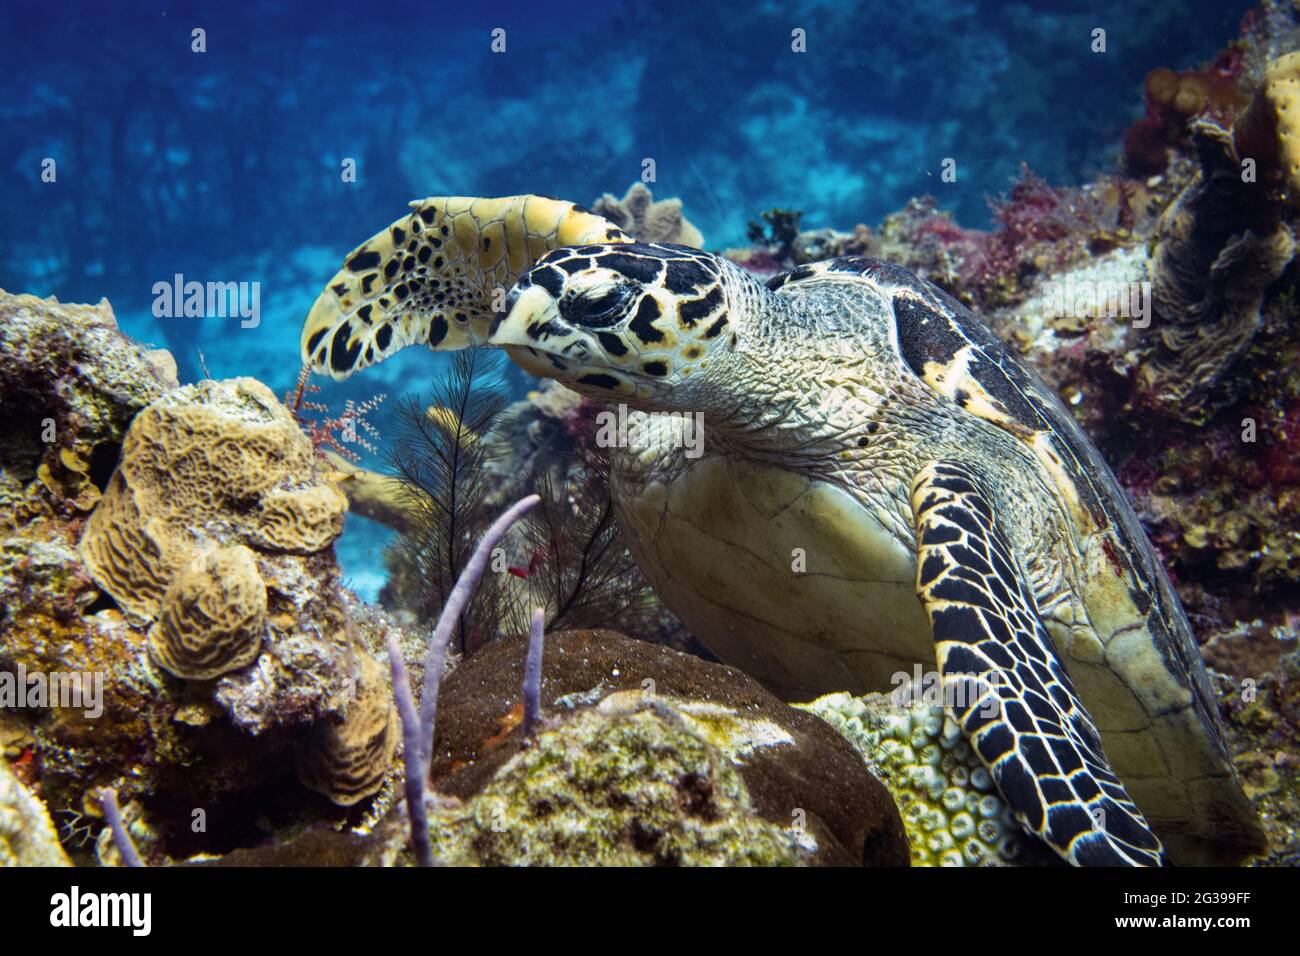 Tortue sous l'eau. Plongée sous-marine à Cozumel Mexique. Banque D'Images